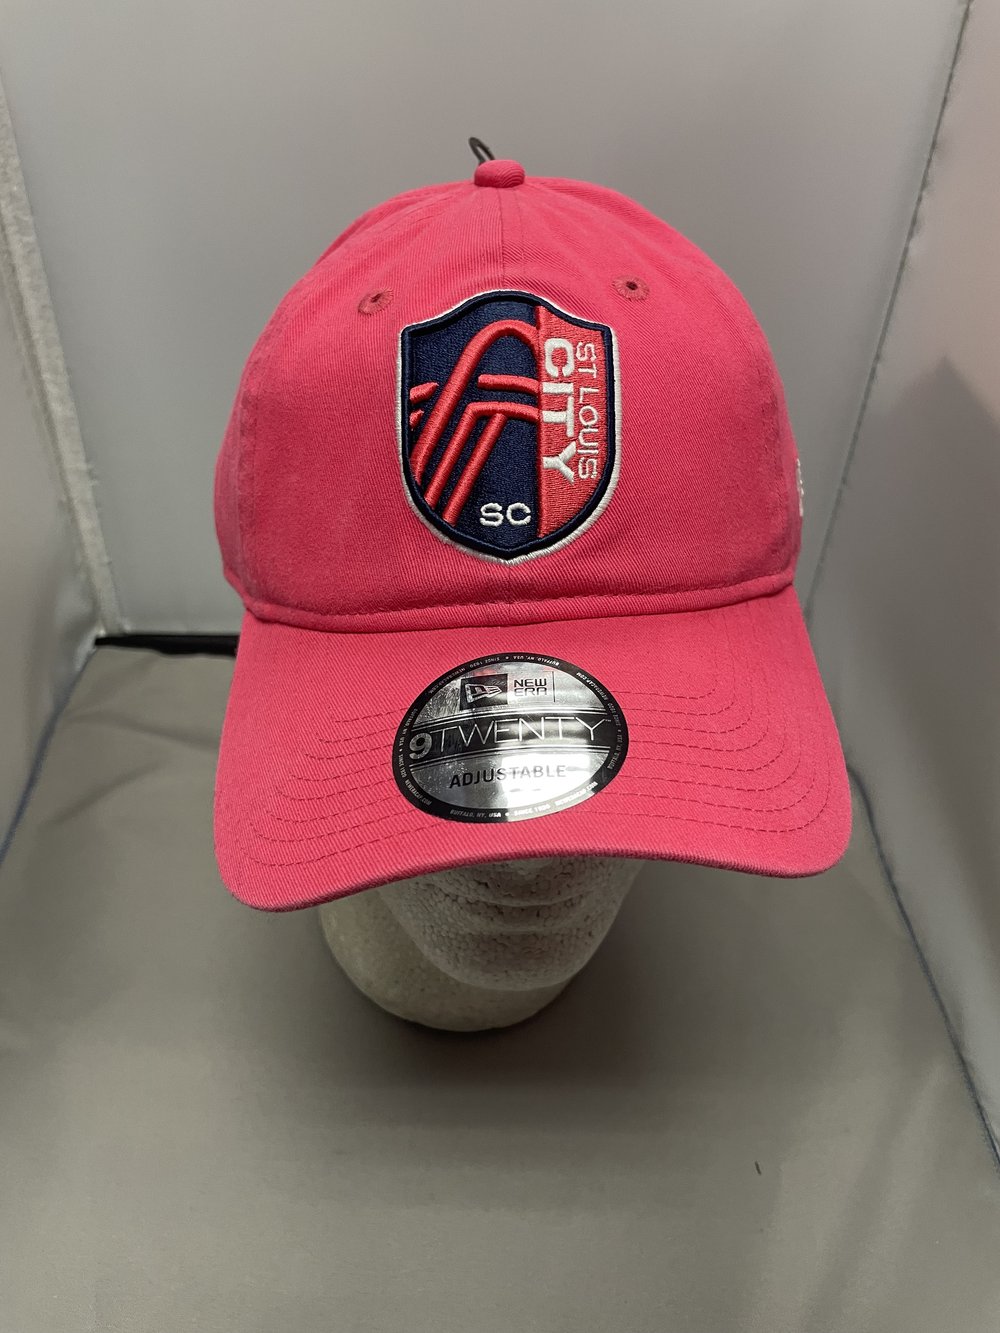 St. Louis City SC Soccer Jersey Cap for Sale by heavenlywhale